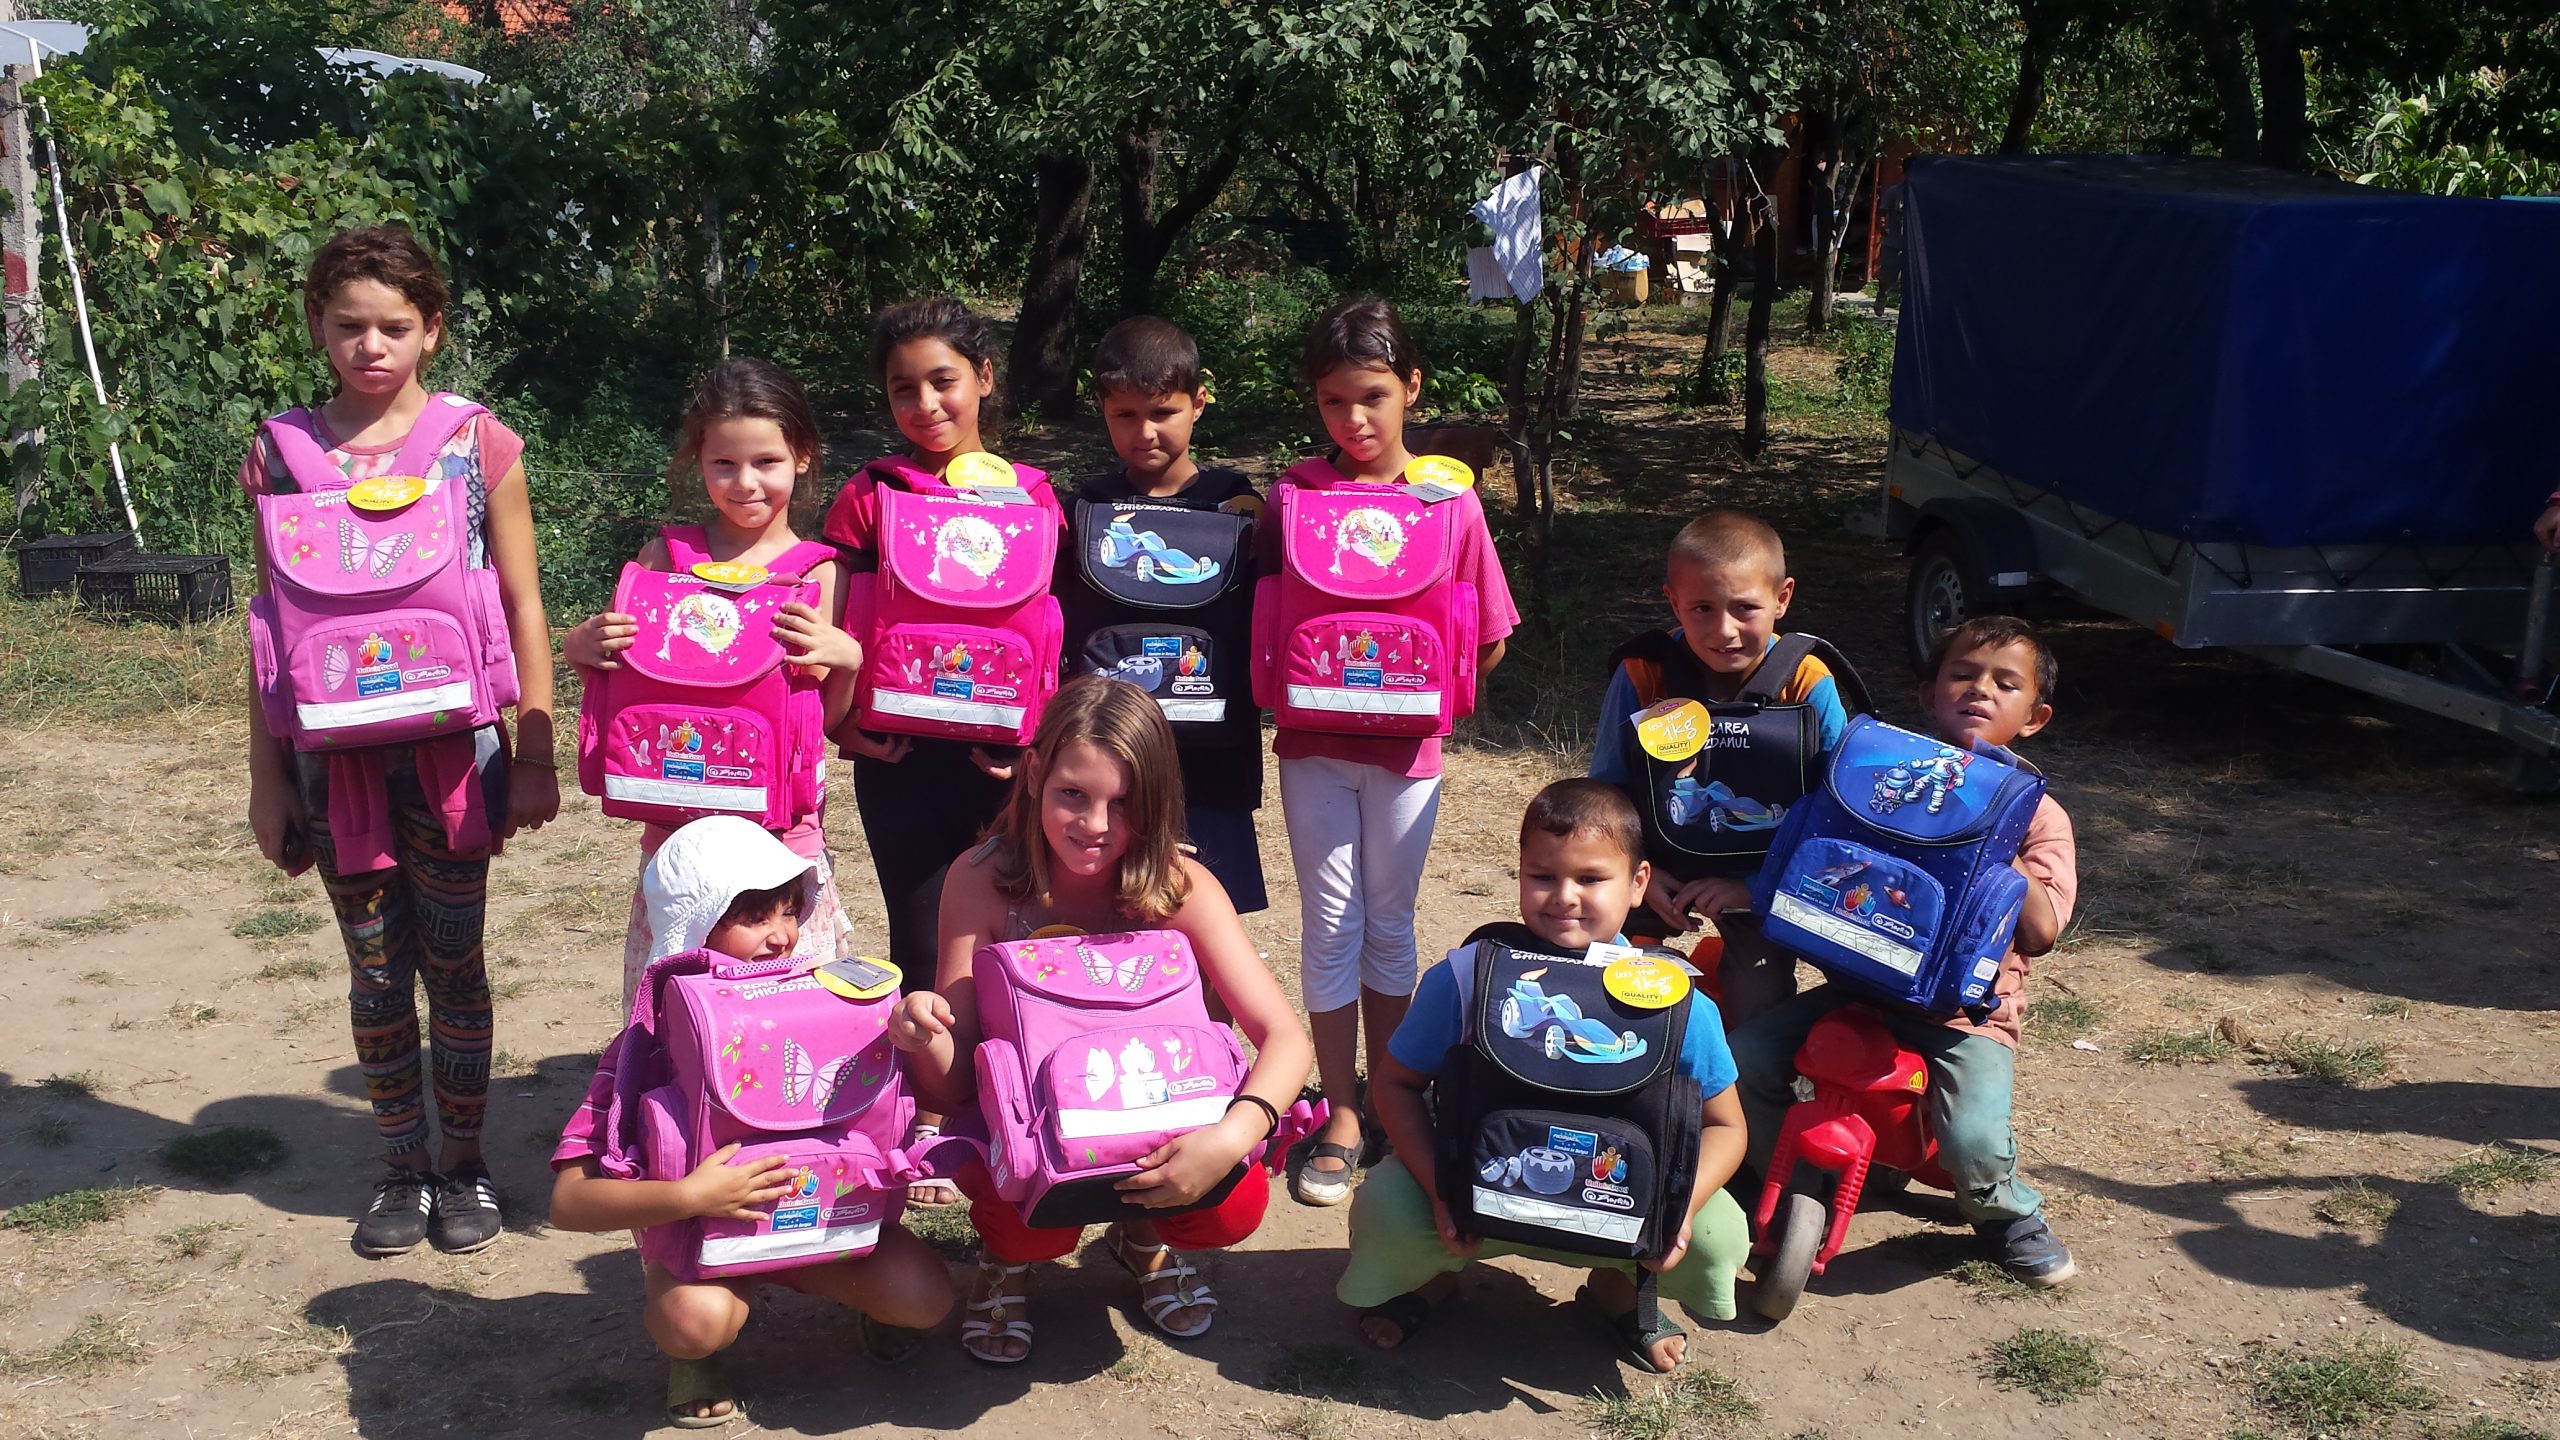 Fondatoarea Organizației Unite în Good a venit la Satu Mare dorind să le înmâneze personal copiilor ghiozdanele achiziționate în cadrul campaniei "Provocarea Ghiozdanul"